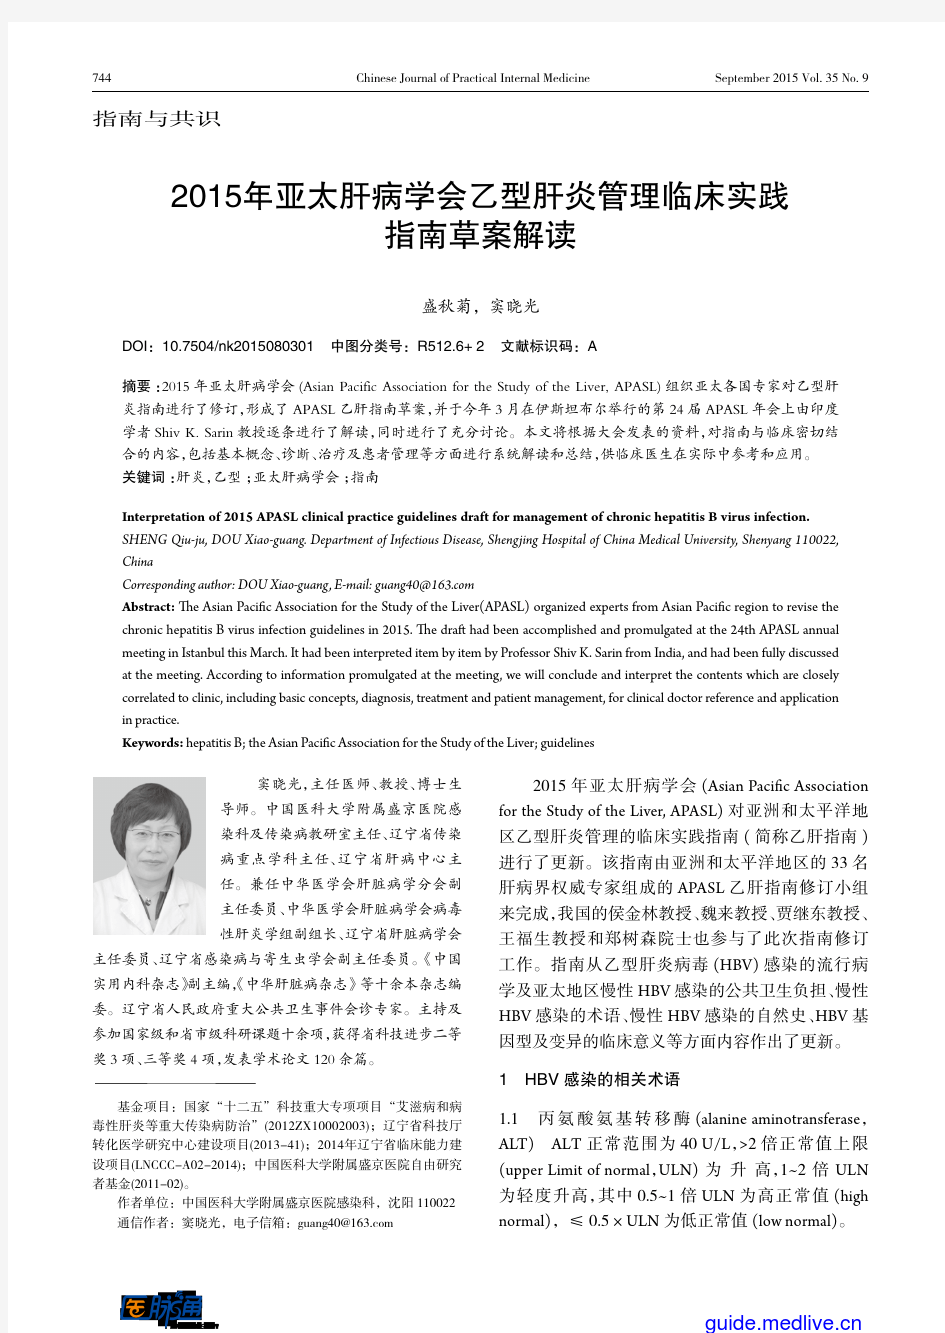 2015年亚太肝病学会乙型肝炎管理临床实践指南草案解读